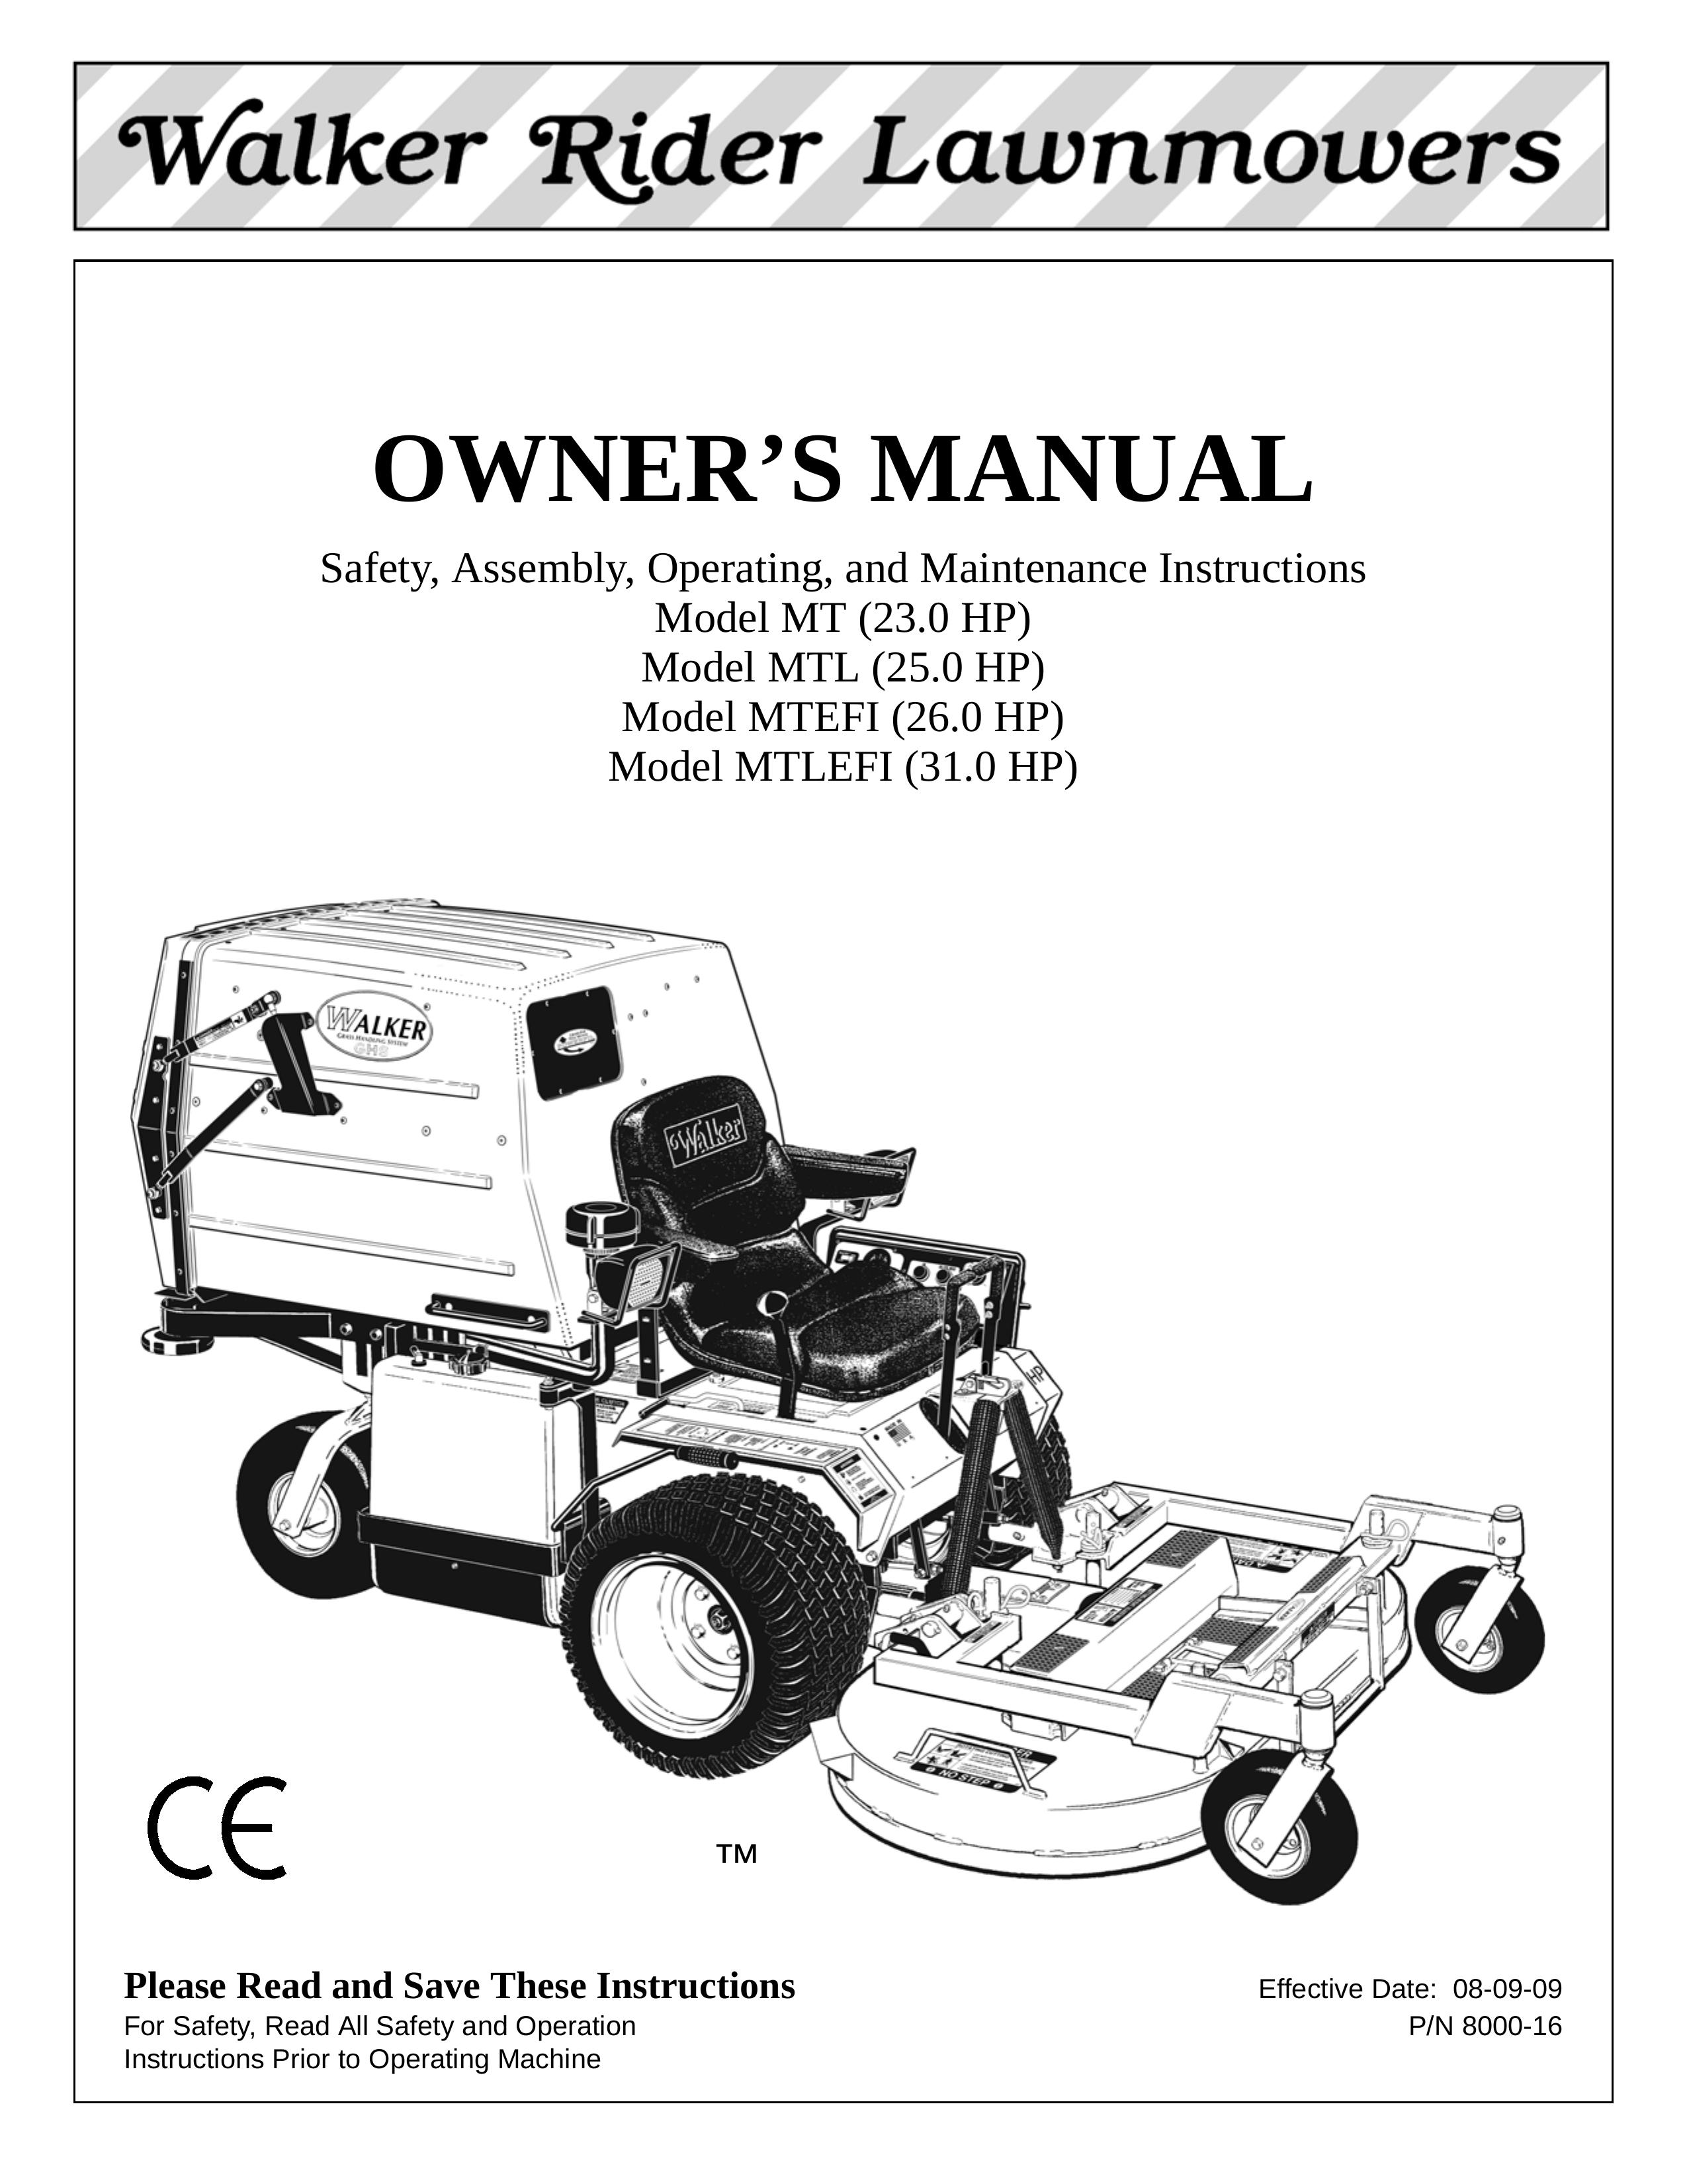 Walker Model MTL Lawn Mower User Manual